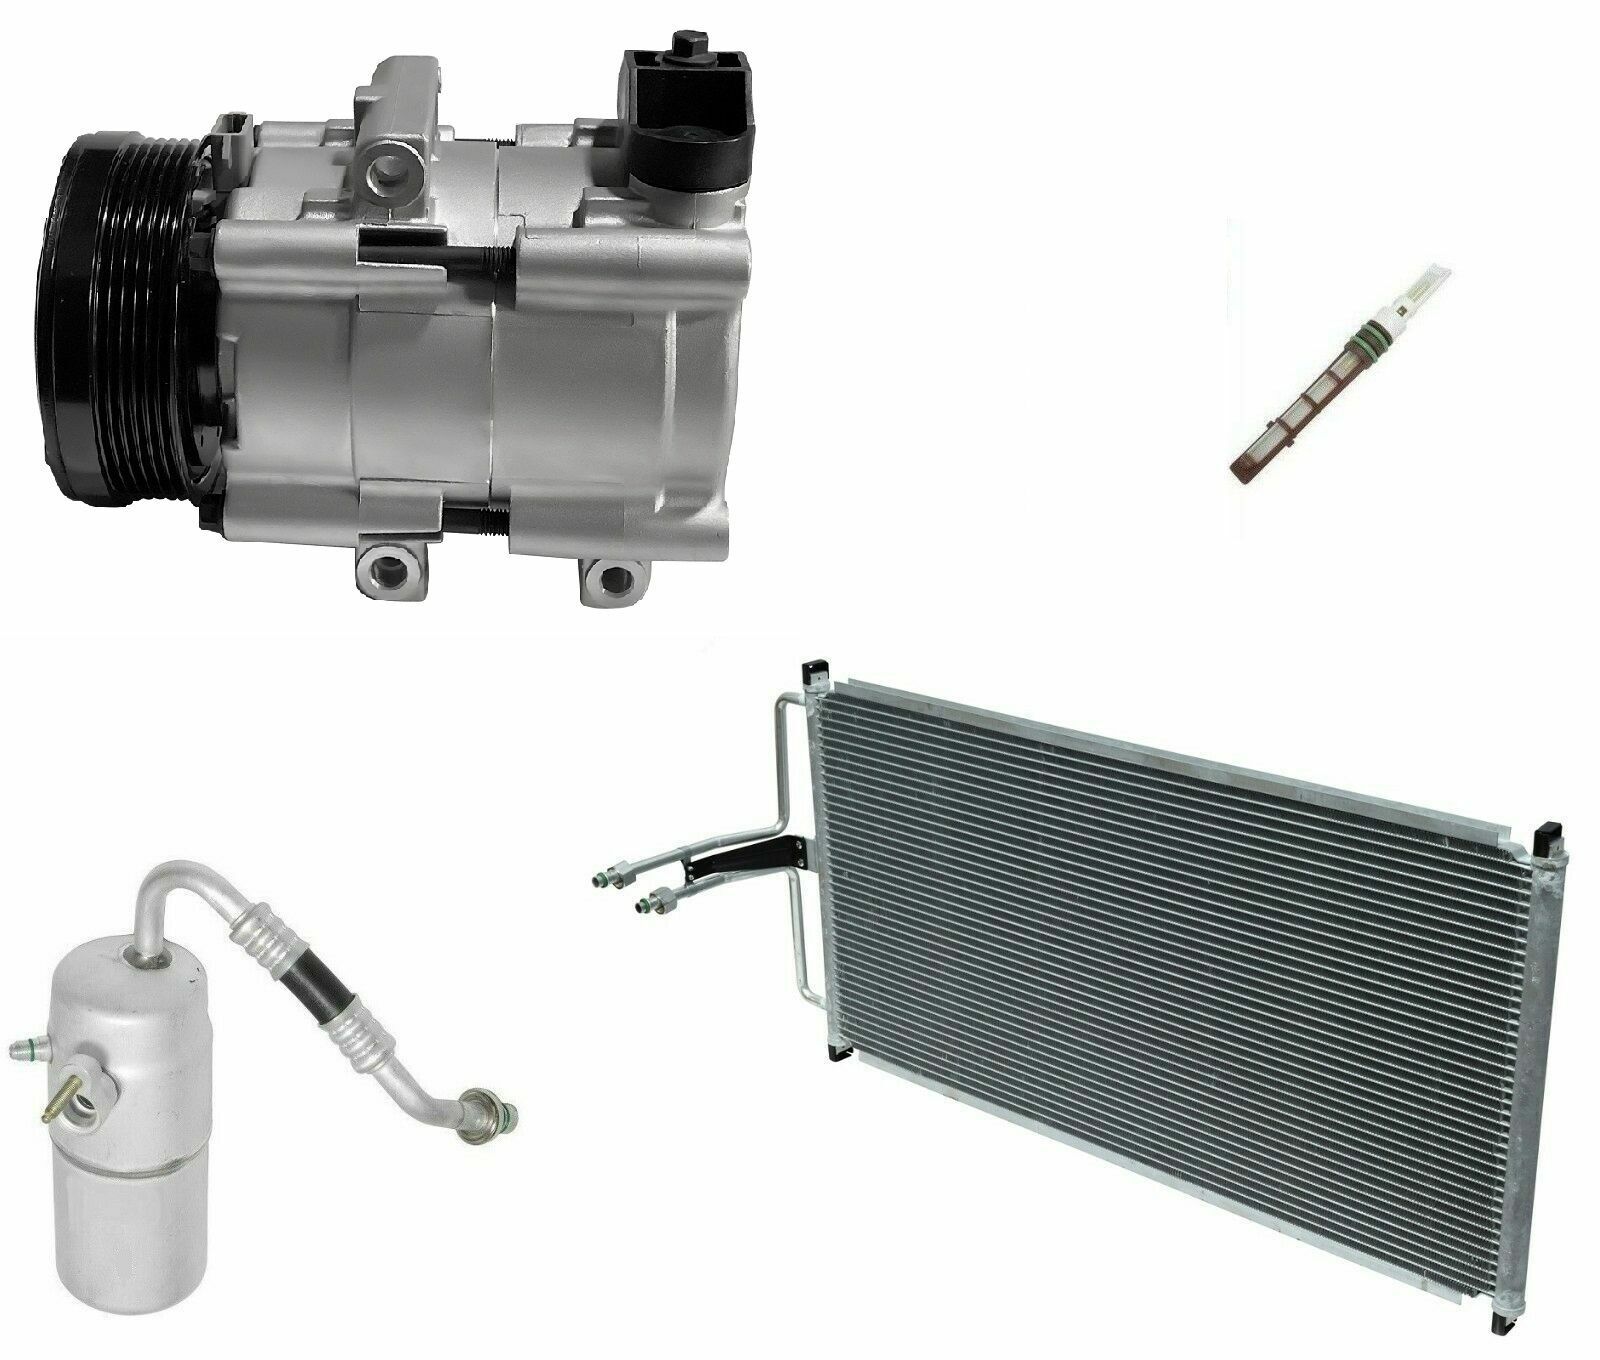 NEW RYC AC Compressor Kit With Condenser AD04A-N Fits F-150 4.6L 5.4L 2005 2006